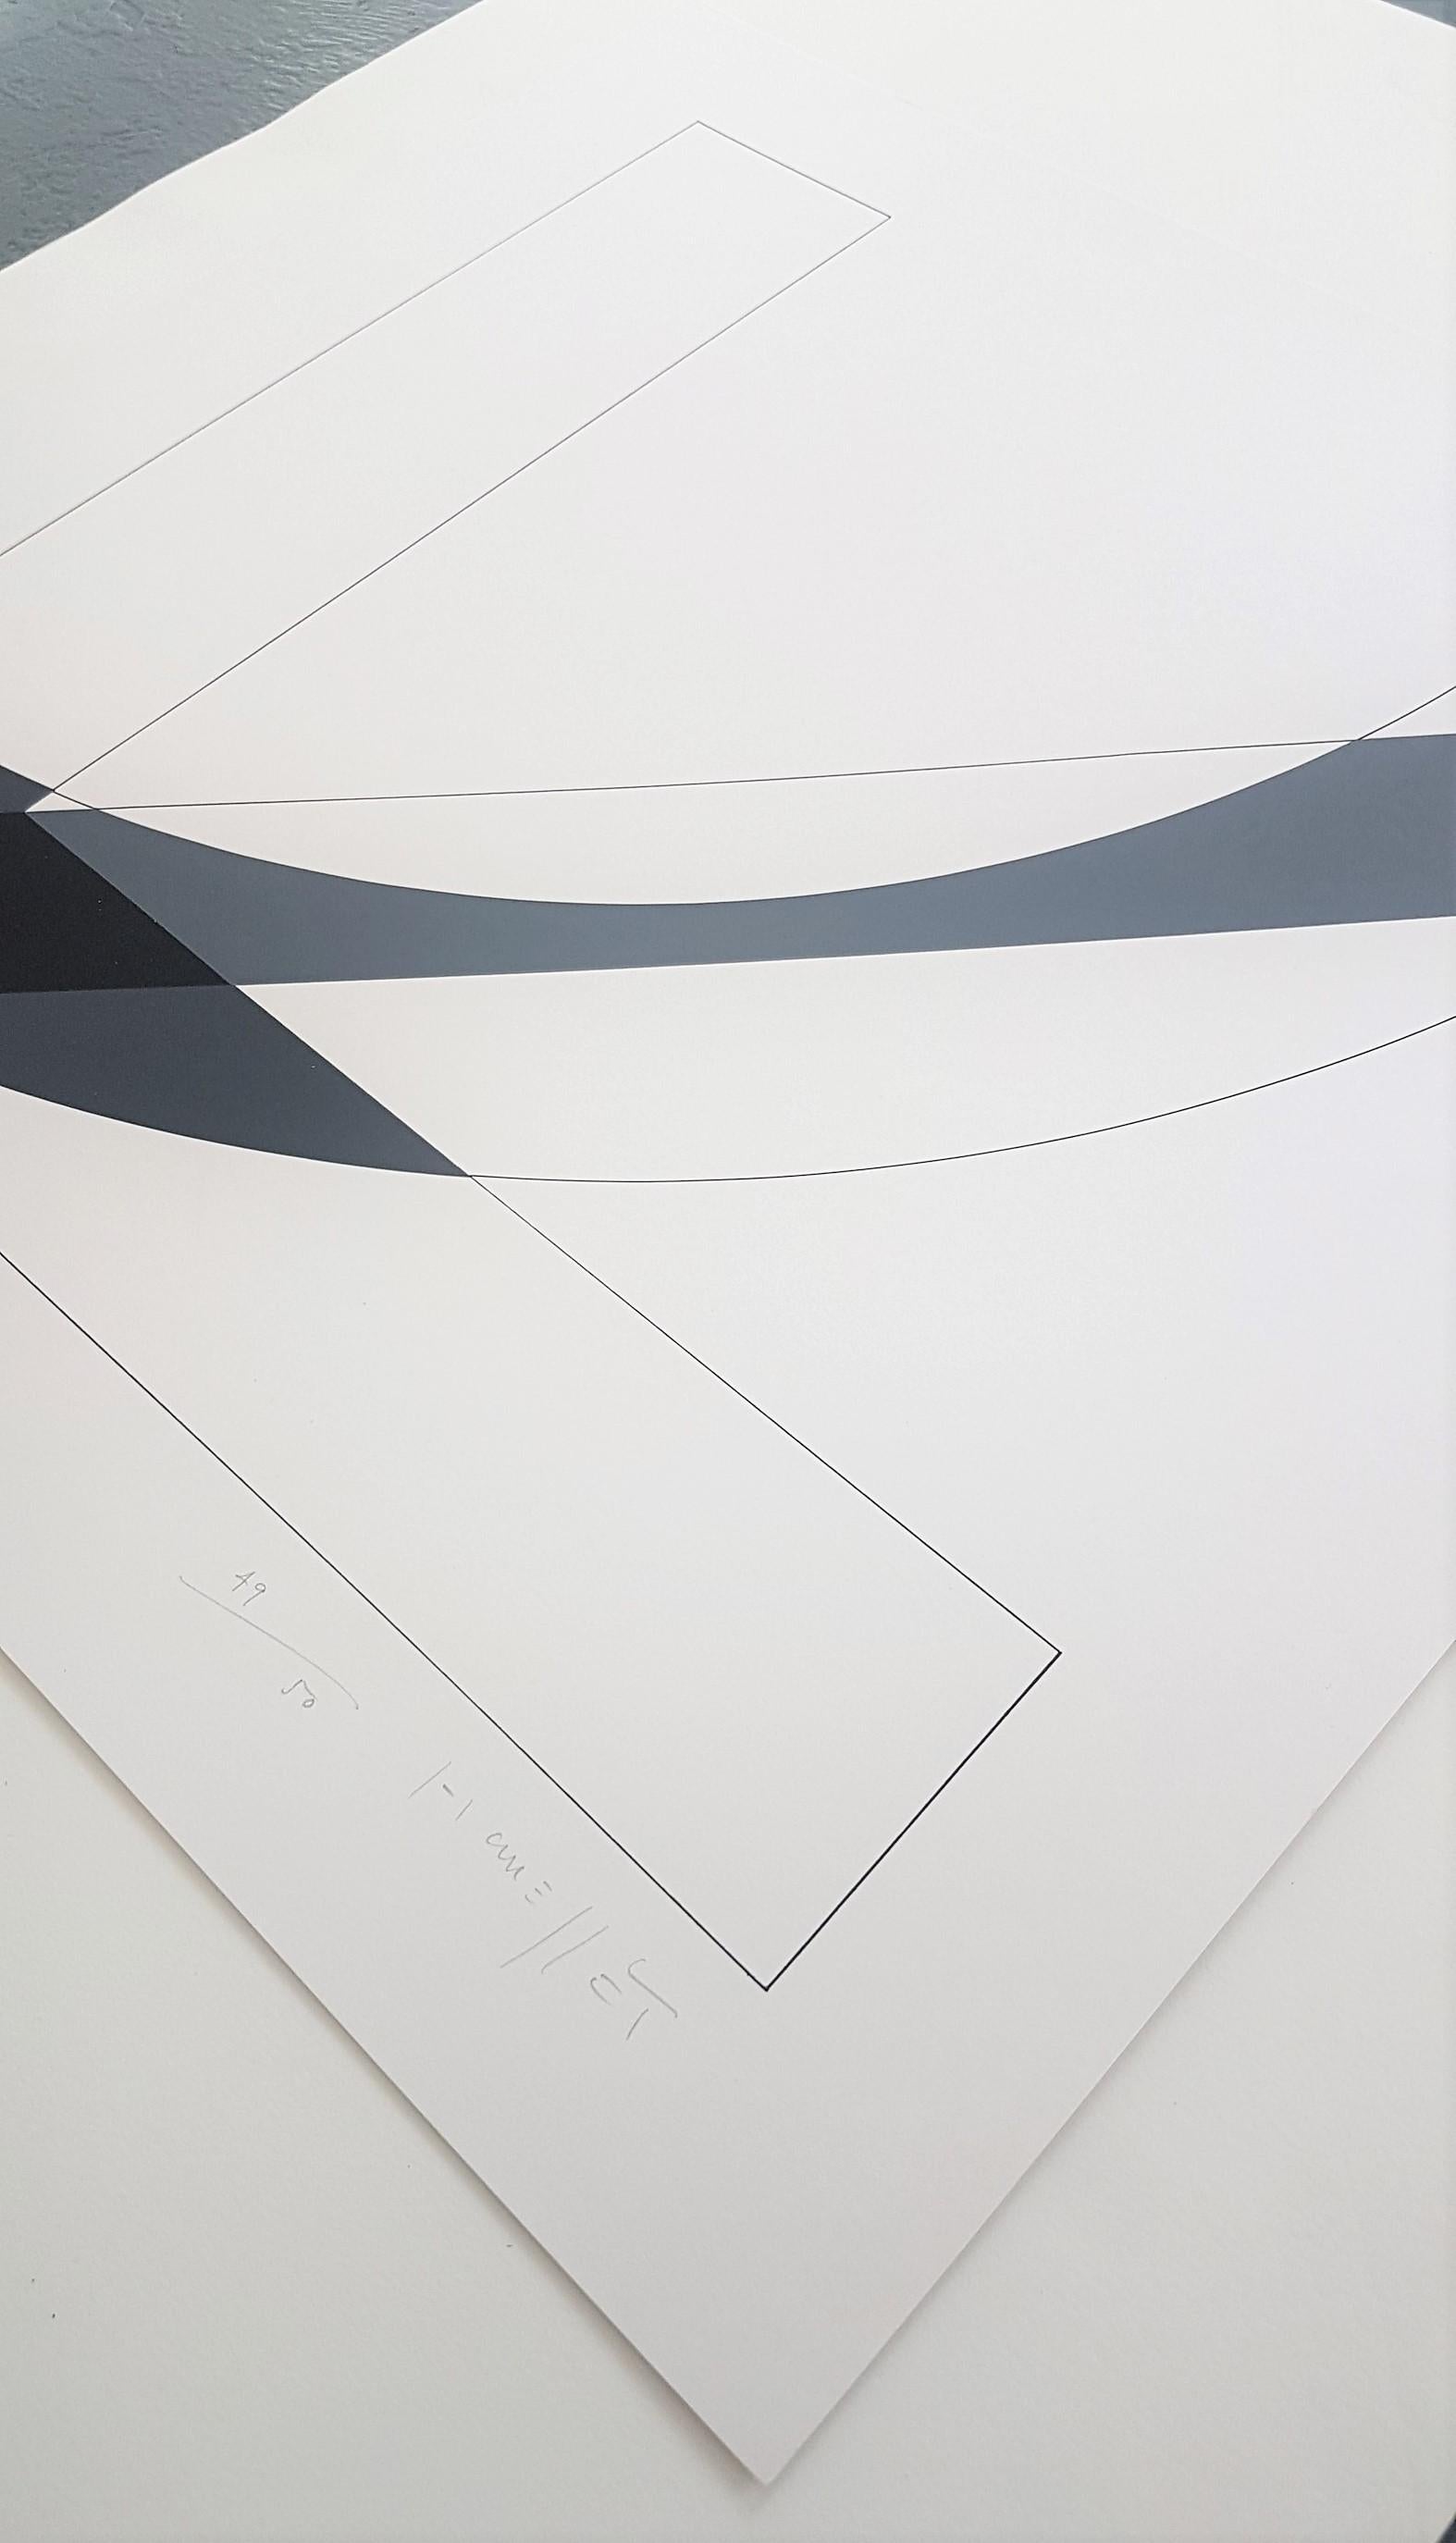 Gottfried Honegger (1917-2016, Schweizer)
Titel: Konkrete geometrische abstrakte Komposition
Farbe Siebdruck
Signiert, nummeriert oder beschriftet
Auflage: 50
Größe: 15,6 × 15,6 auf 19,5 × 19,5 Zoll
COA bereitgestellt

Gottfried Honegger (12. Juni